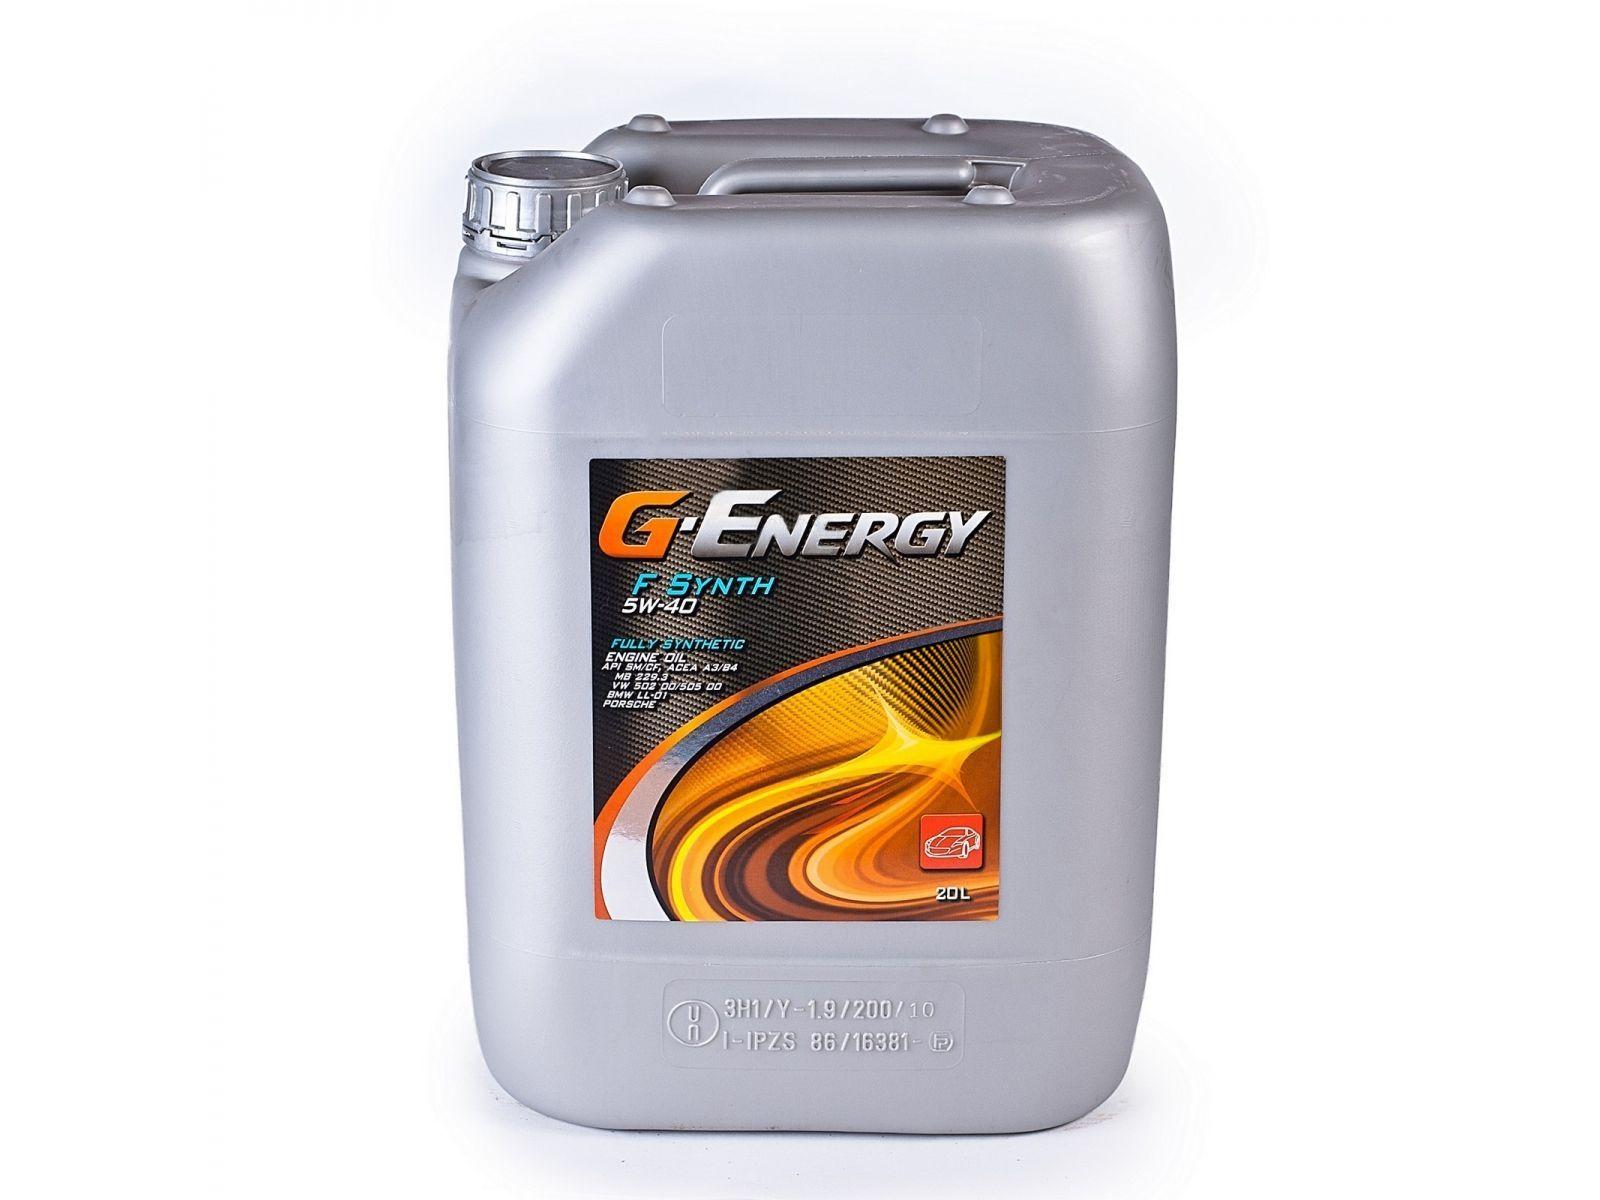 G-Energy 齒輪油 - 概述、規格、評論